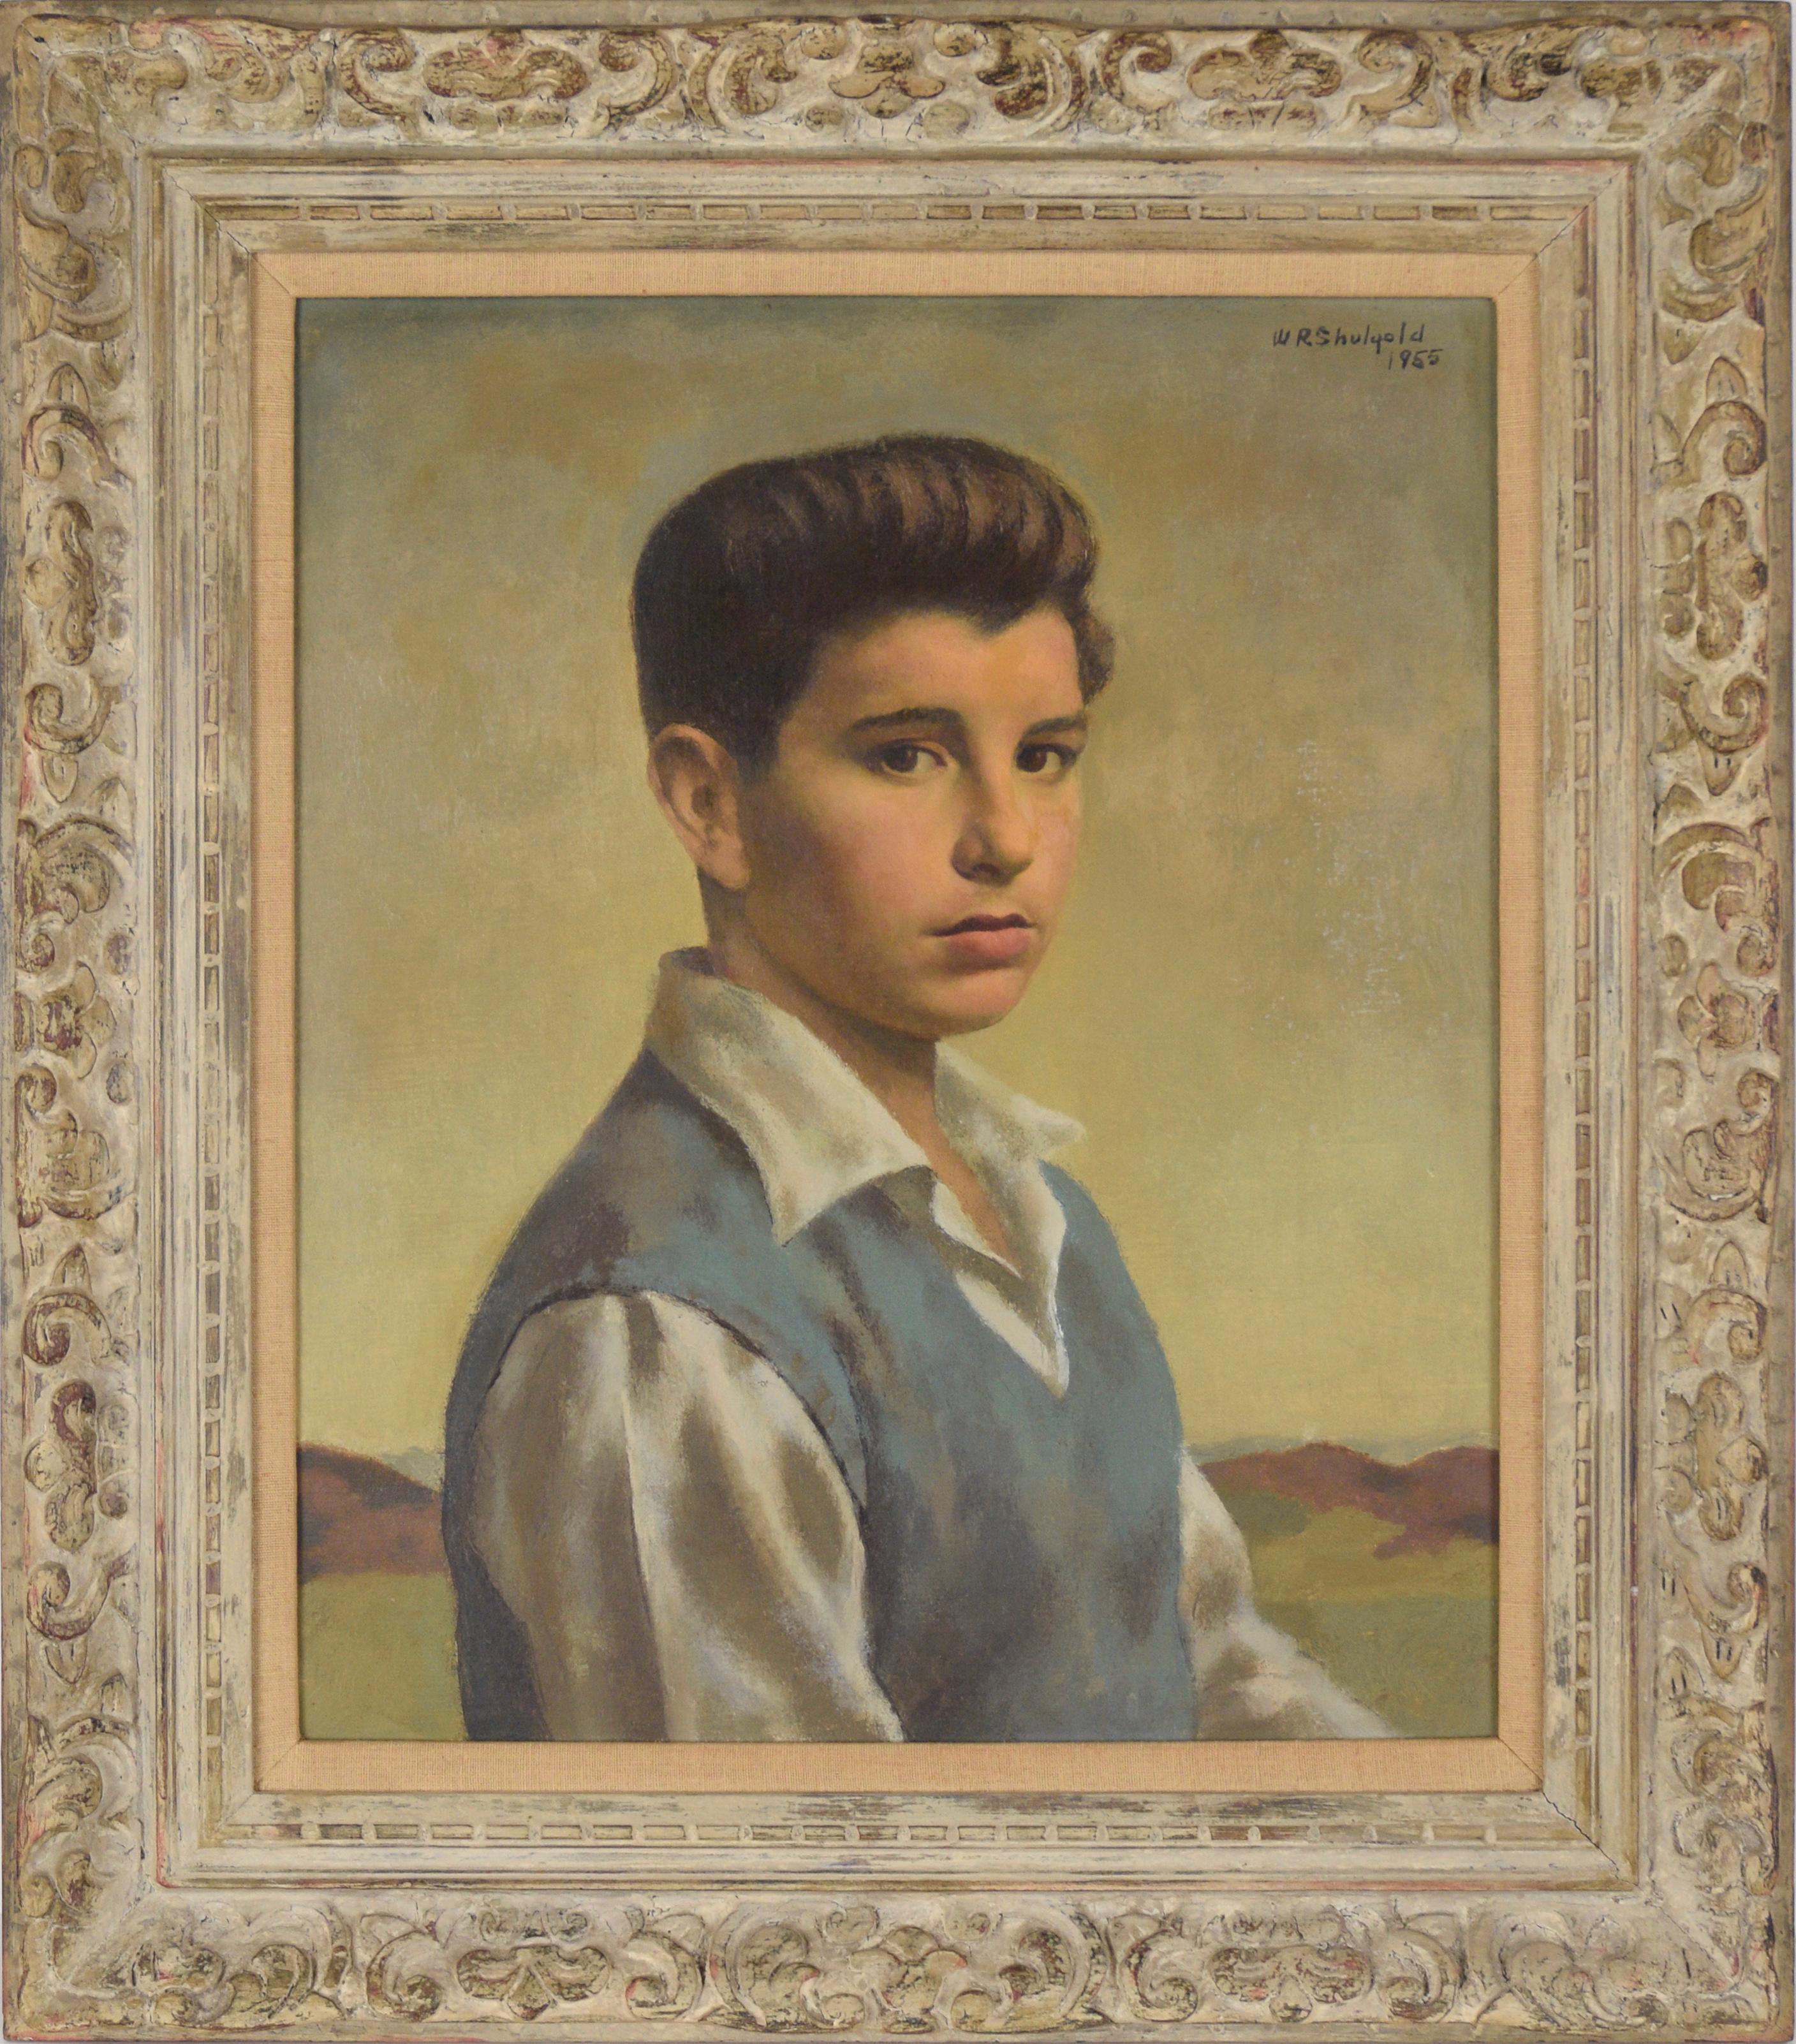 William Robert Shulgold  Figurative Painting – "Child Star" Mid Century Portrait eines Jungen mit braunen Augen Öl auf Leinwand